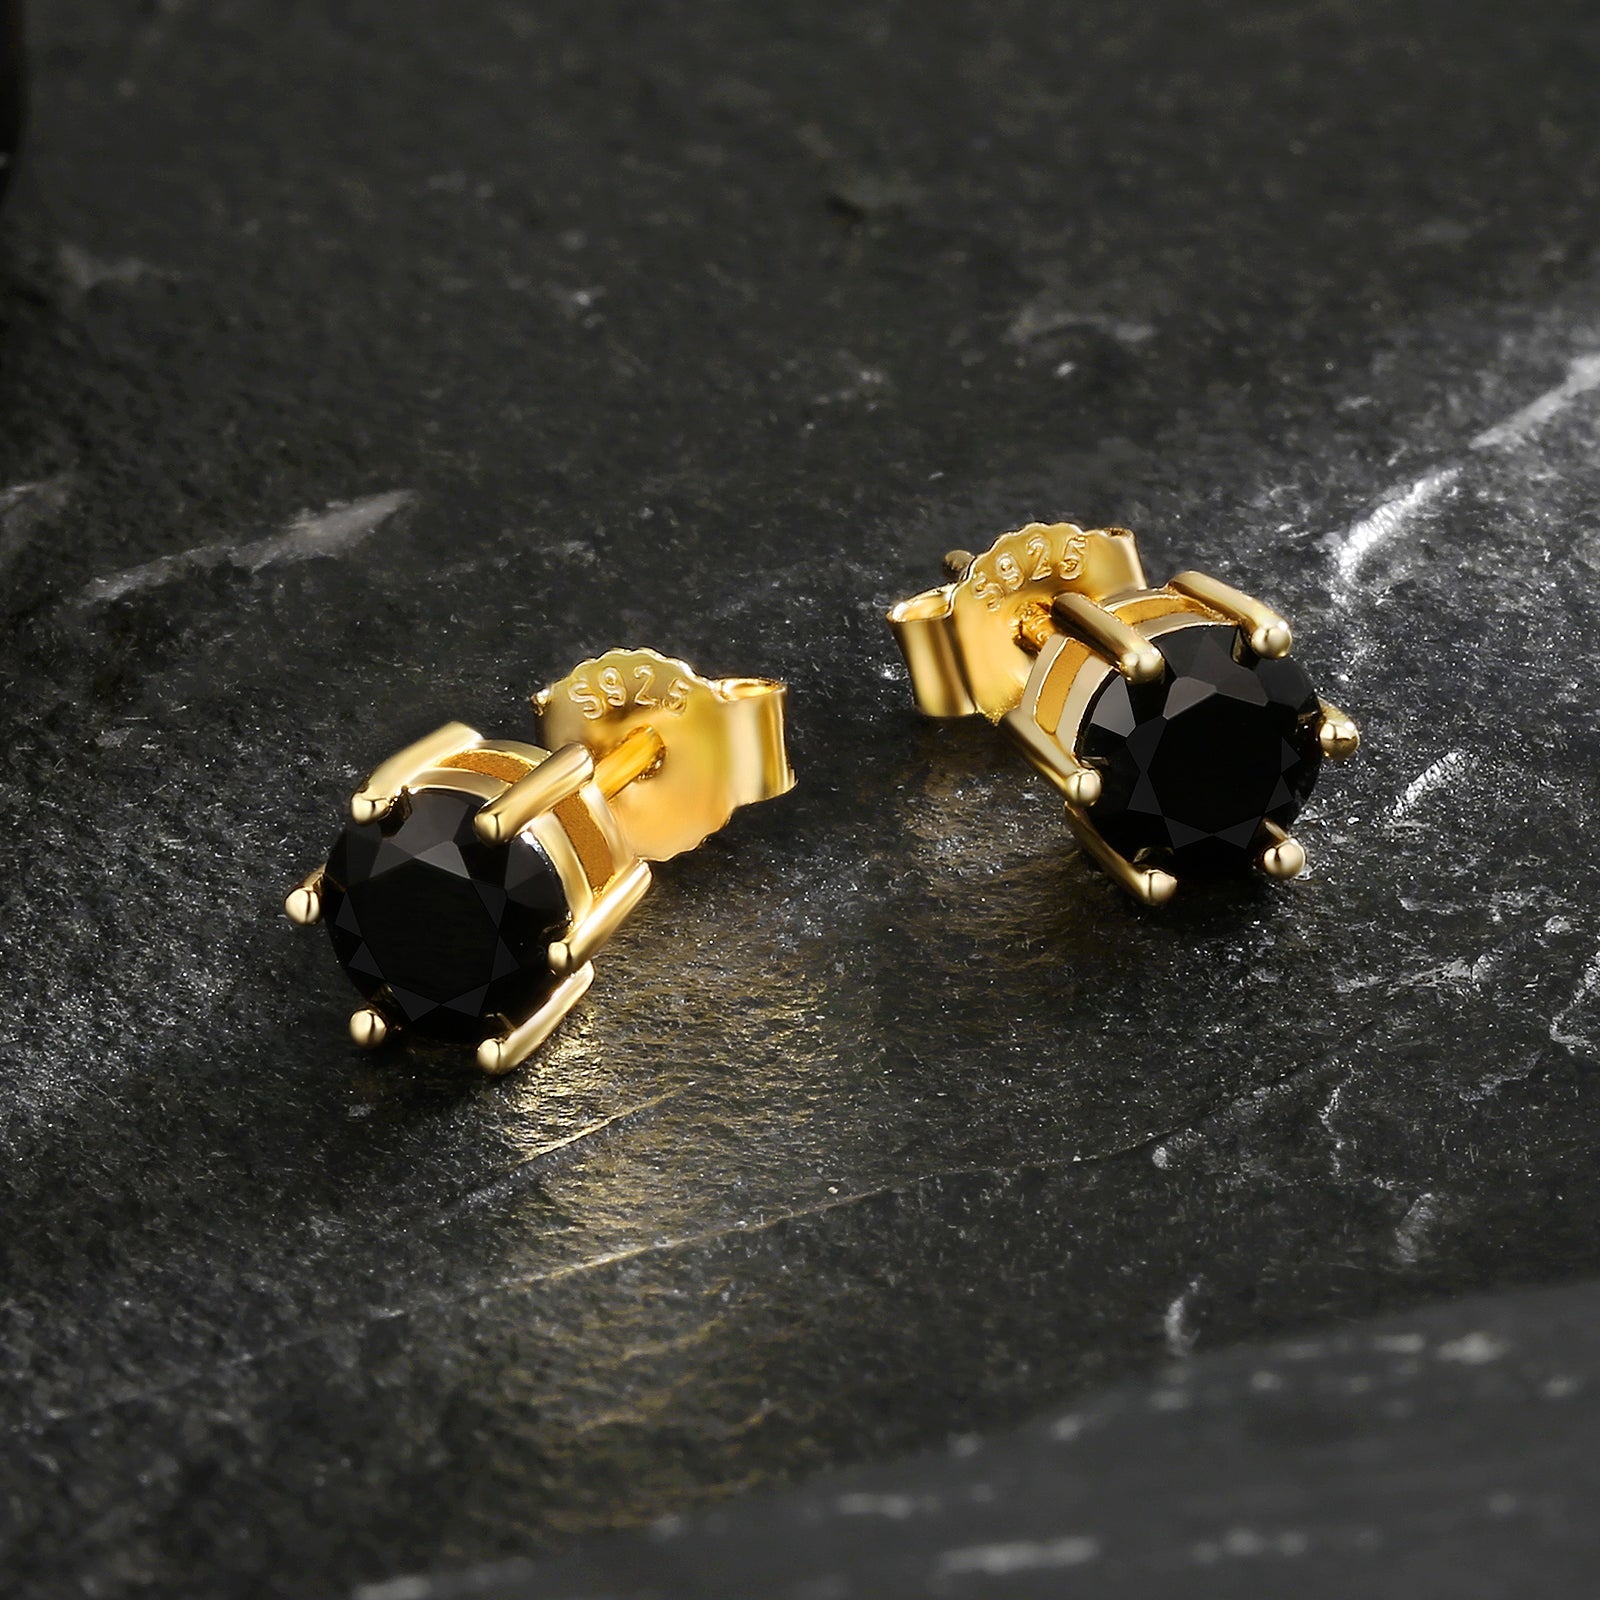 Wholesale Men's Earrings 6mm Black CZ Stone Round Iced Stud Earrings for Men in 14K Gold/ White Gold